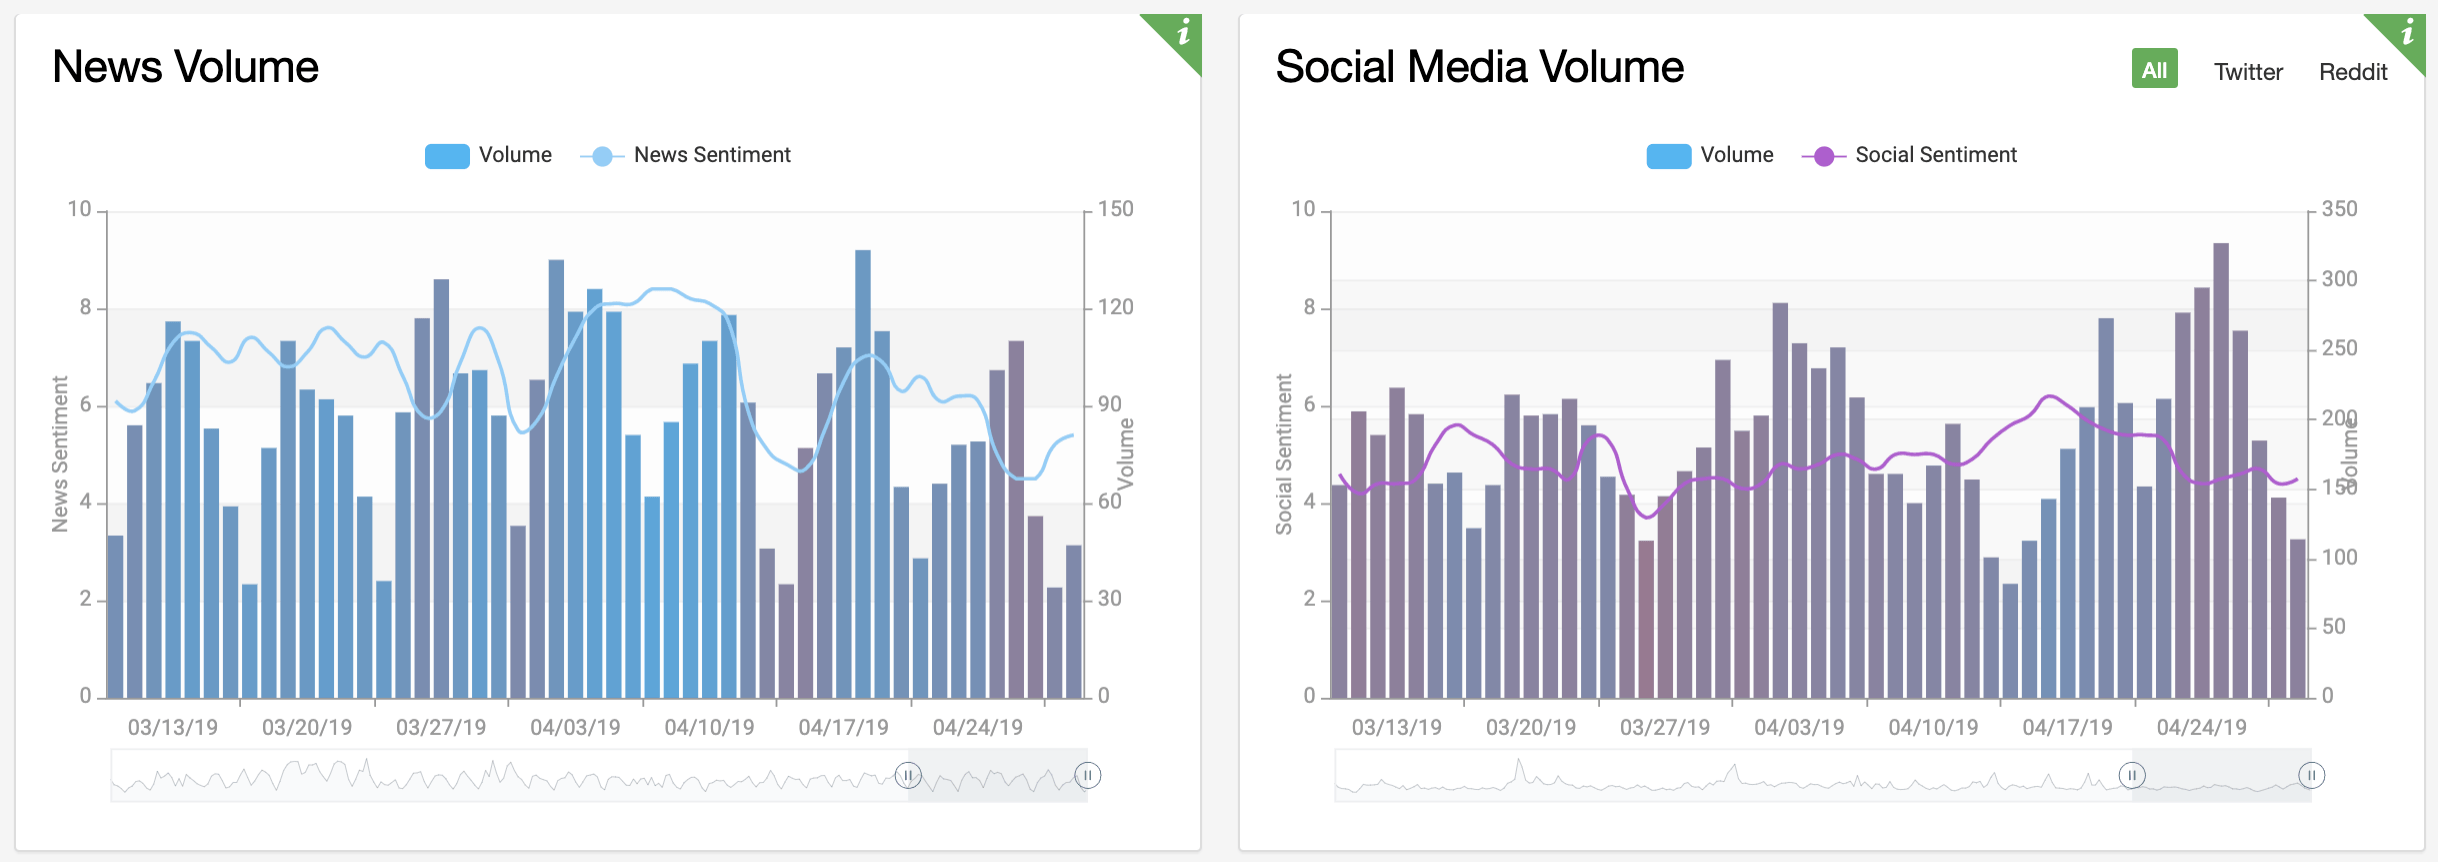 News and social volume